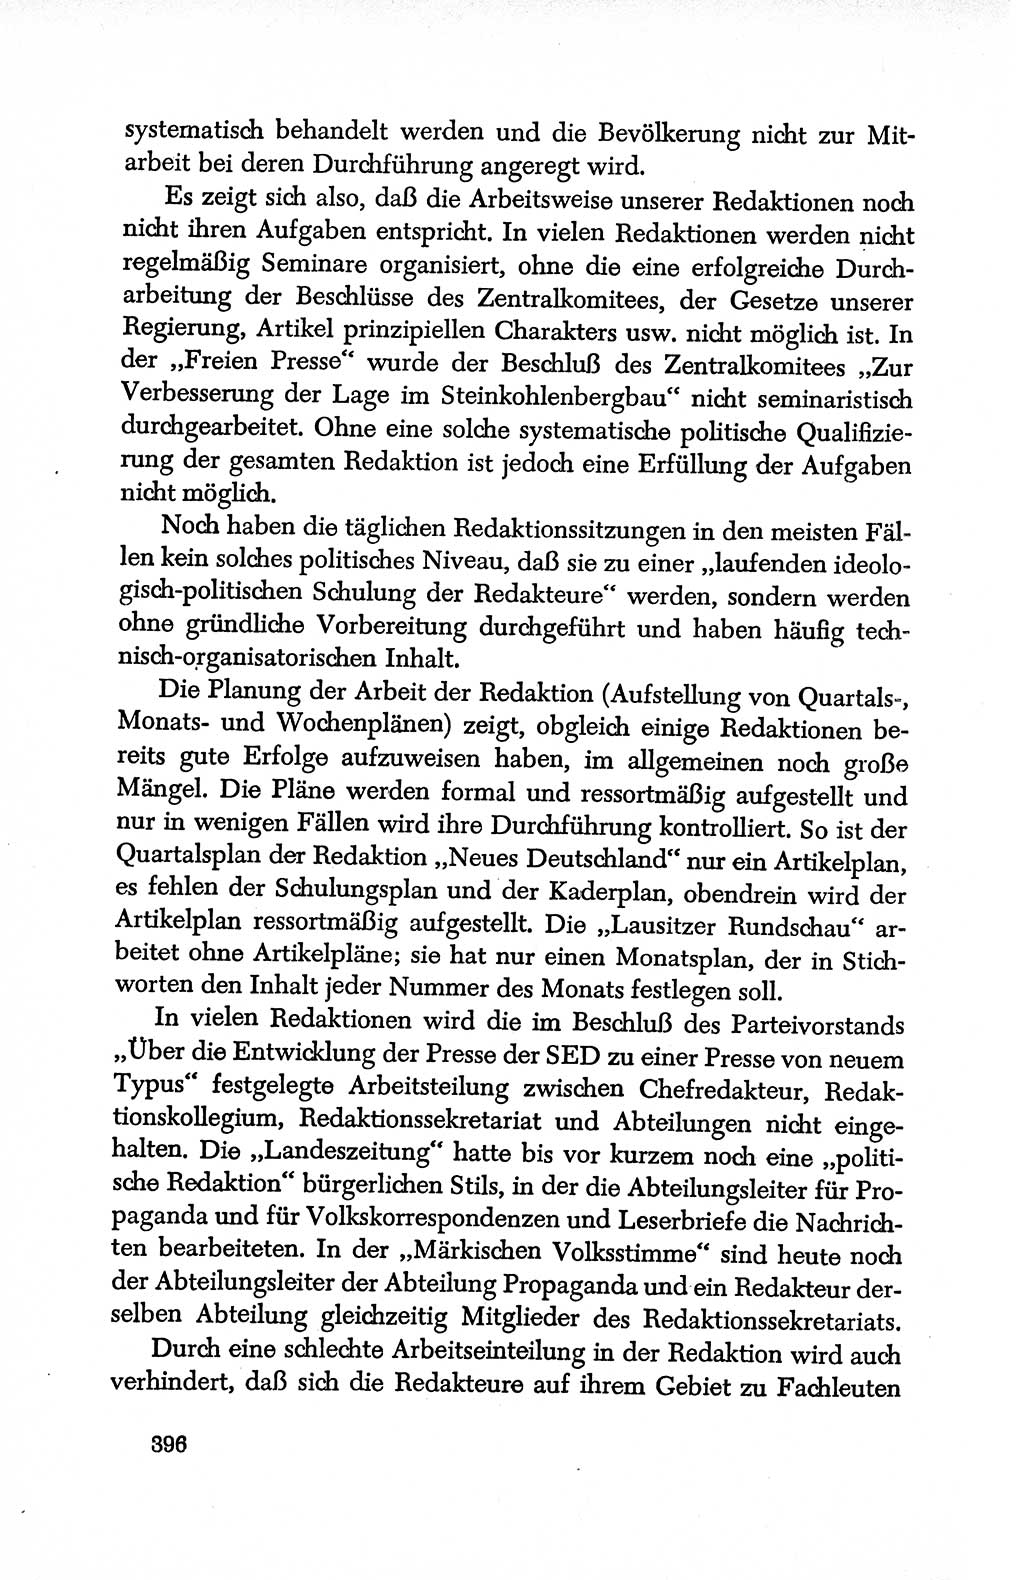 Dokumente der Sozialistischen Einheitspartei Deutschlands (SED) [Deutsche Demokratische Republik (DDR)] 1950-1952, Seite 396 (Dok. SED DDR 1950-1952, S. 396)